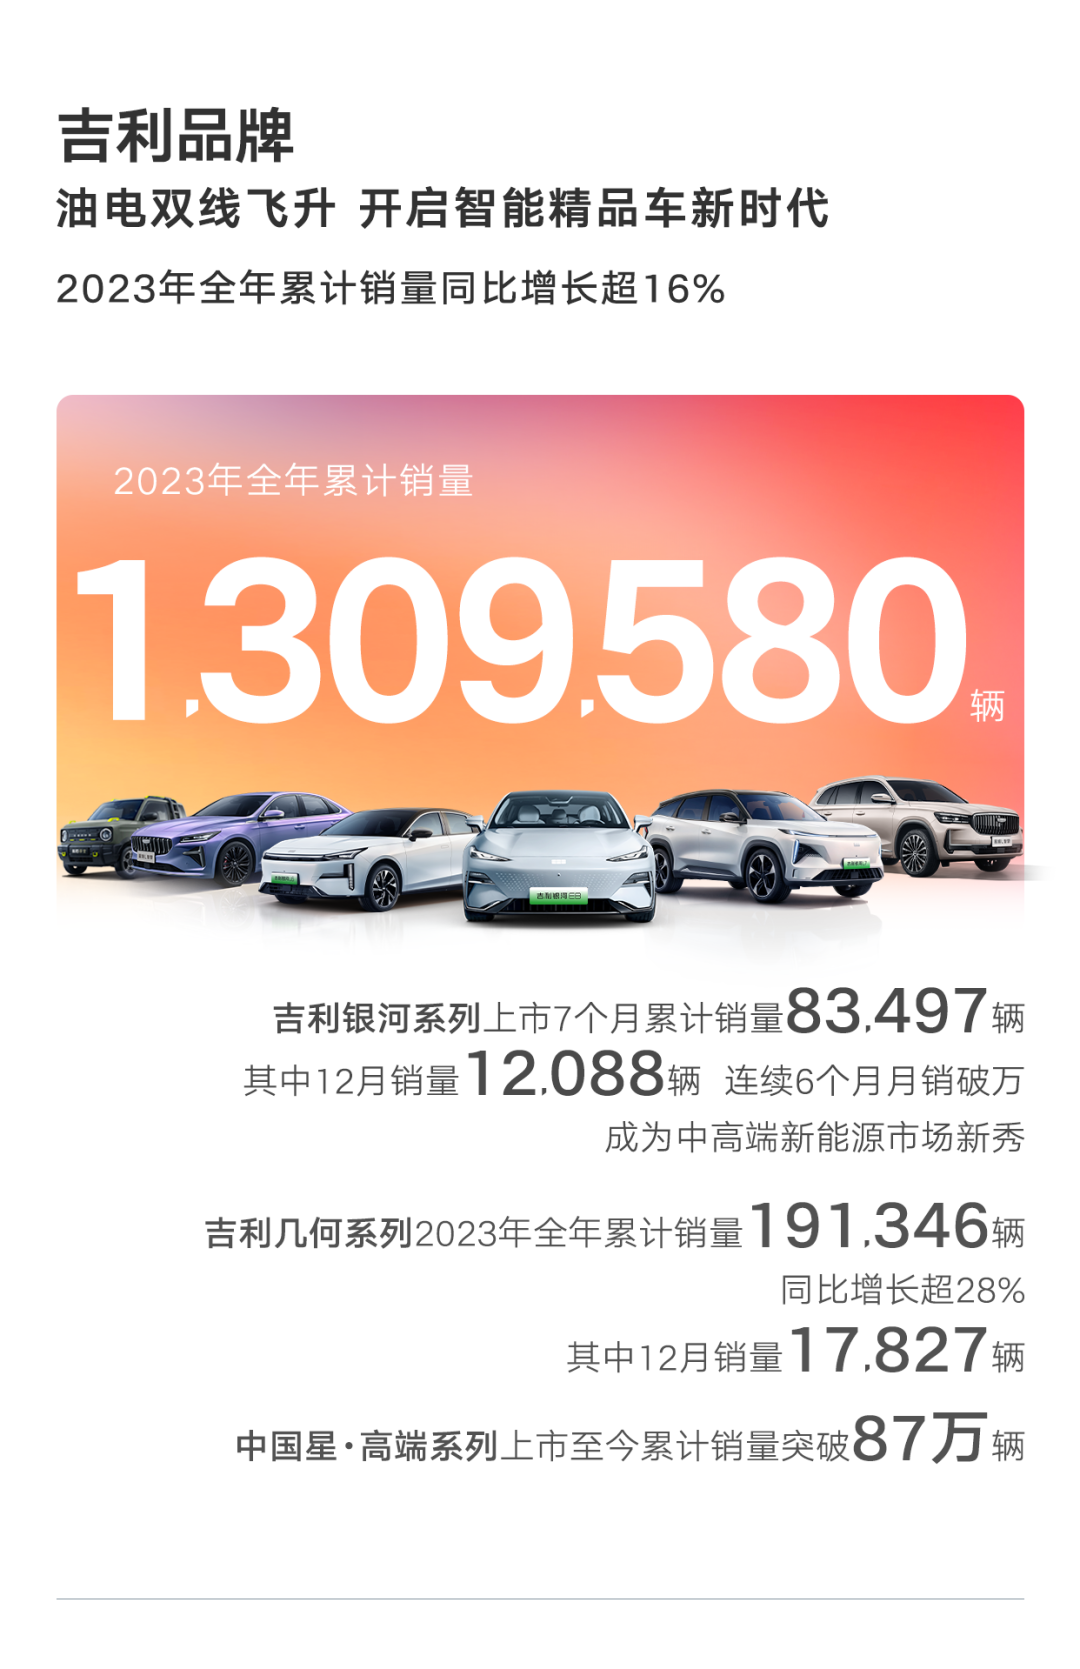 吉利汽车 | 2023全年销量超168万辆，超额完成目标！2024年销量向190万辆目标迈进